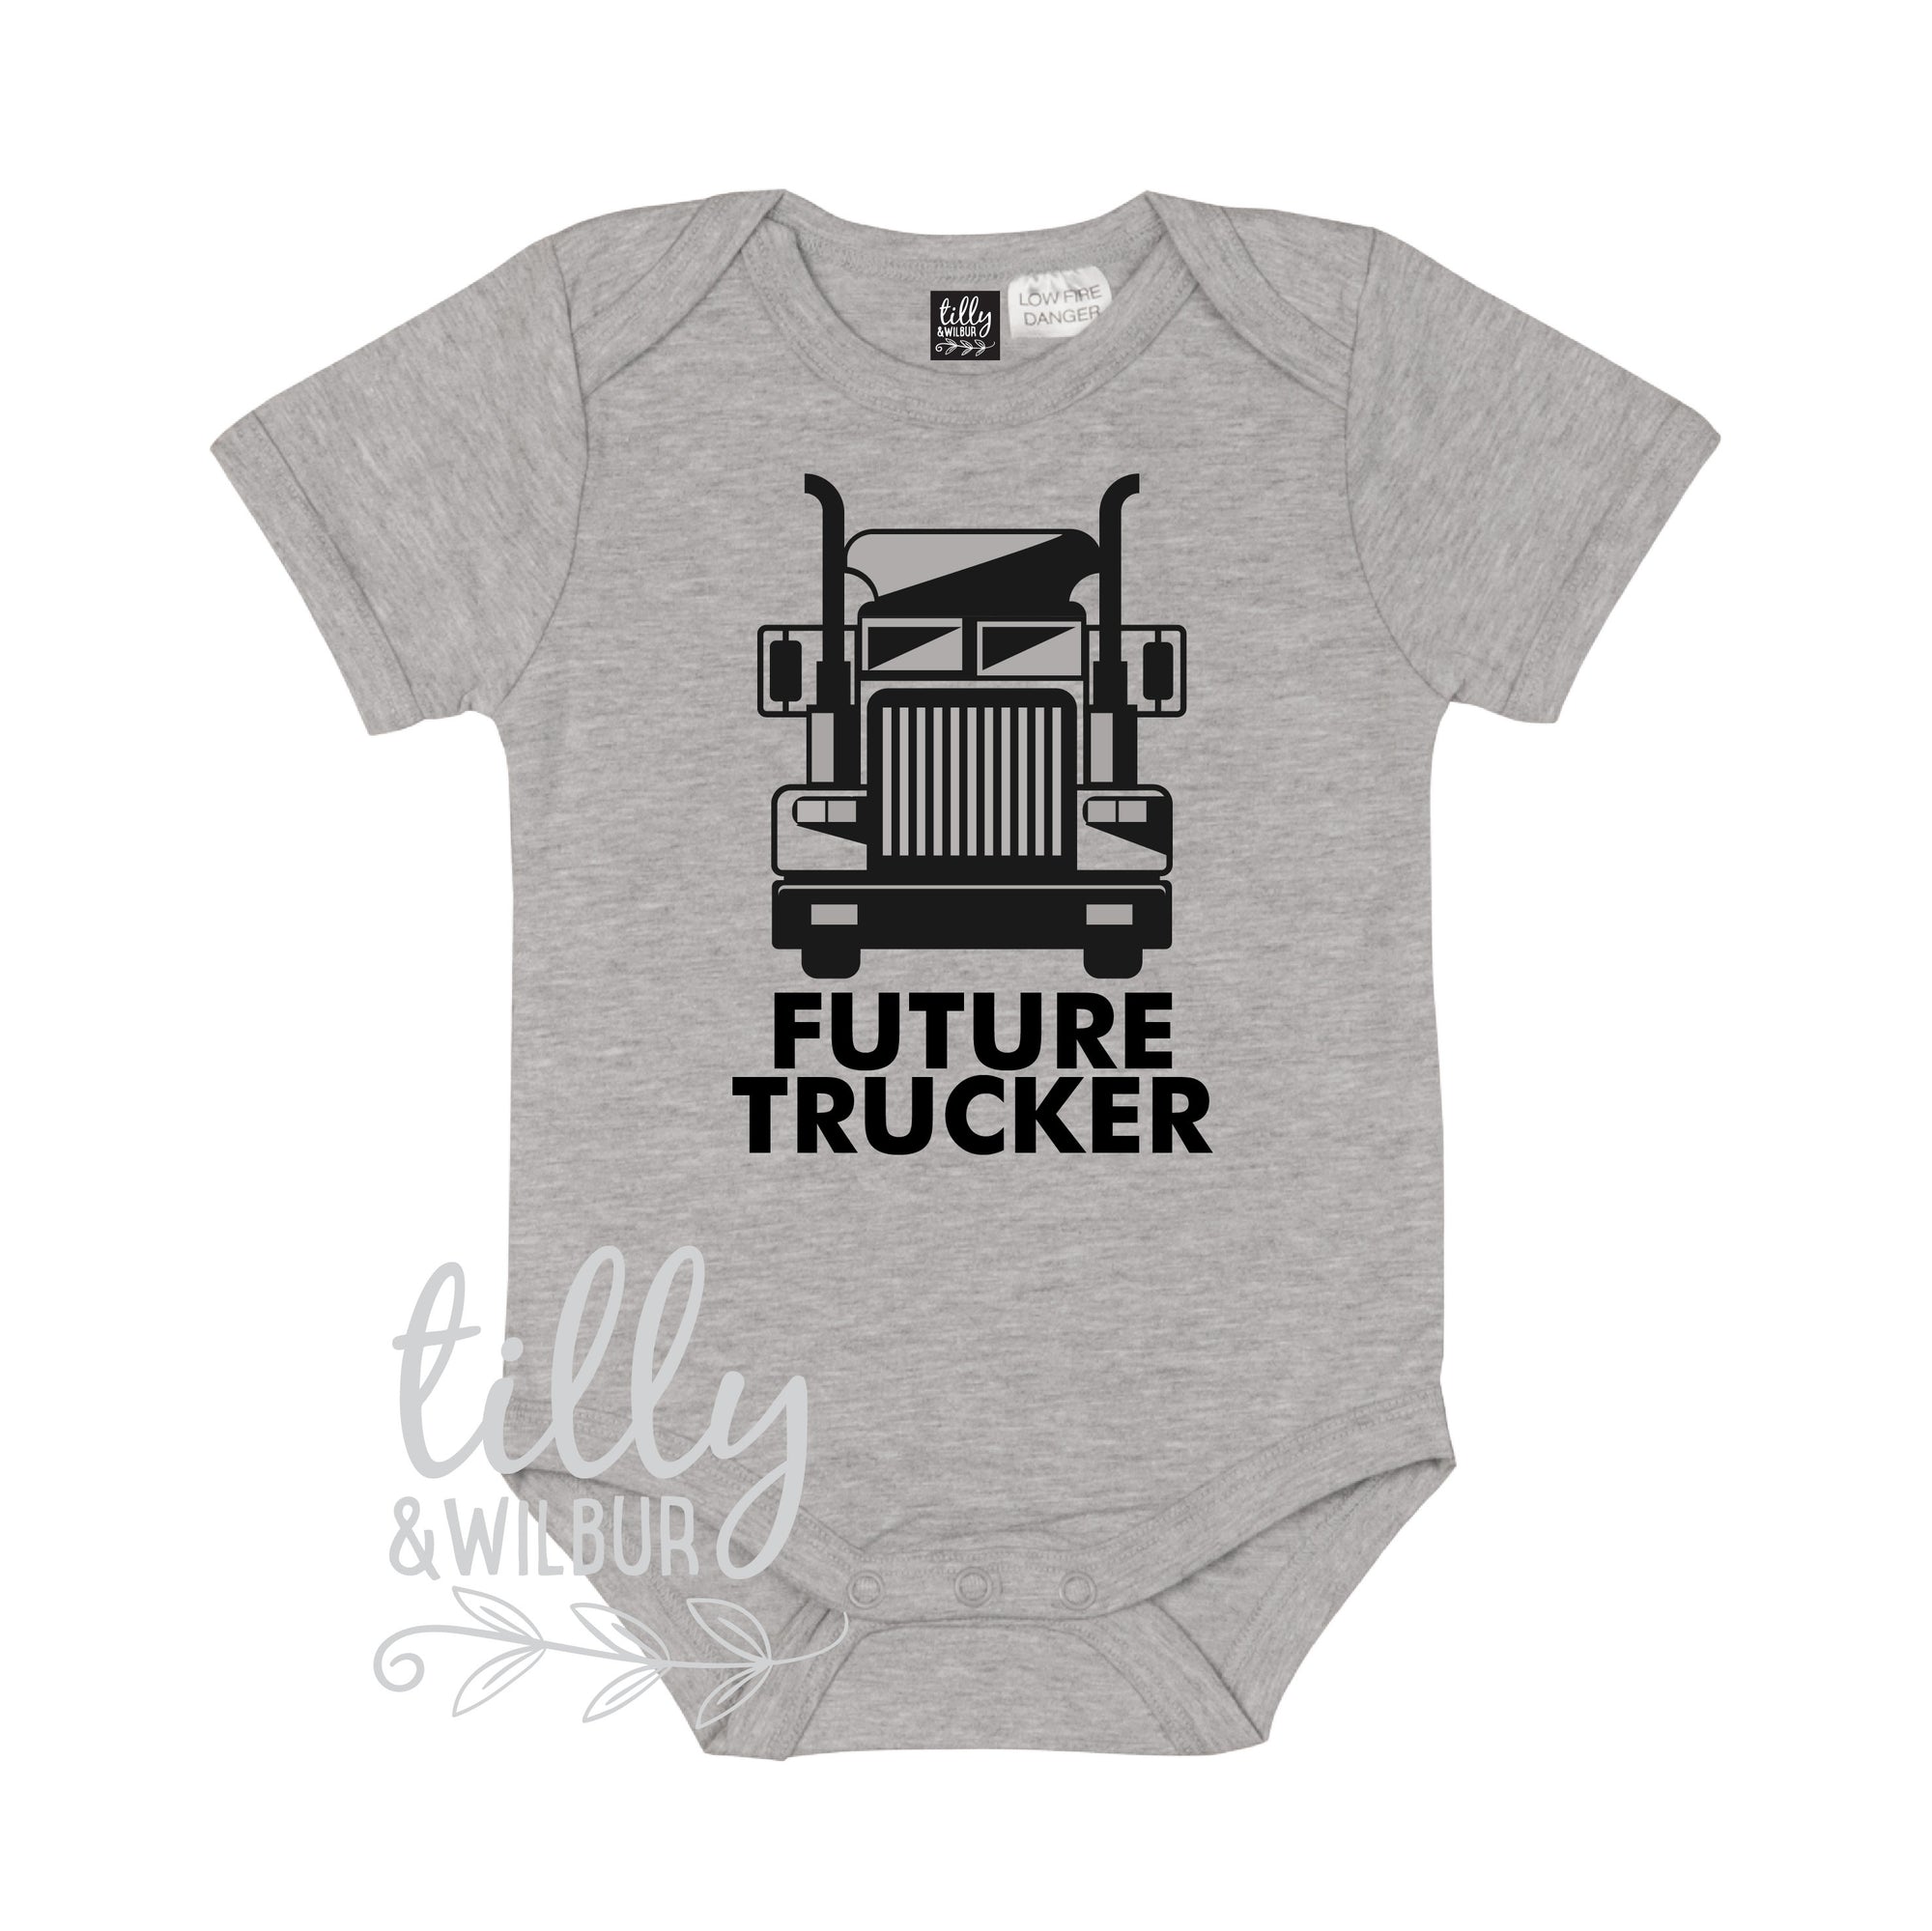 Future Trucker Kenworth Truck Pregnancy Announcement Baby Bodysuit